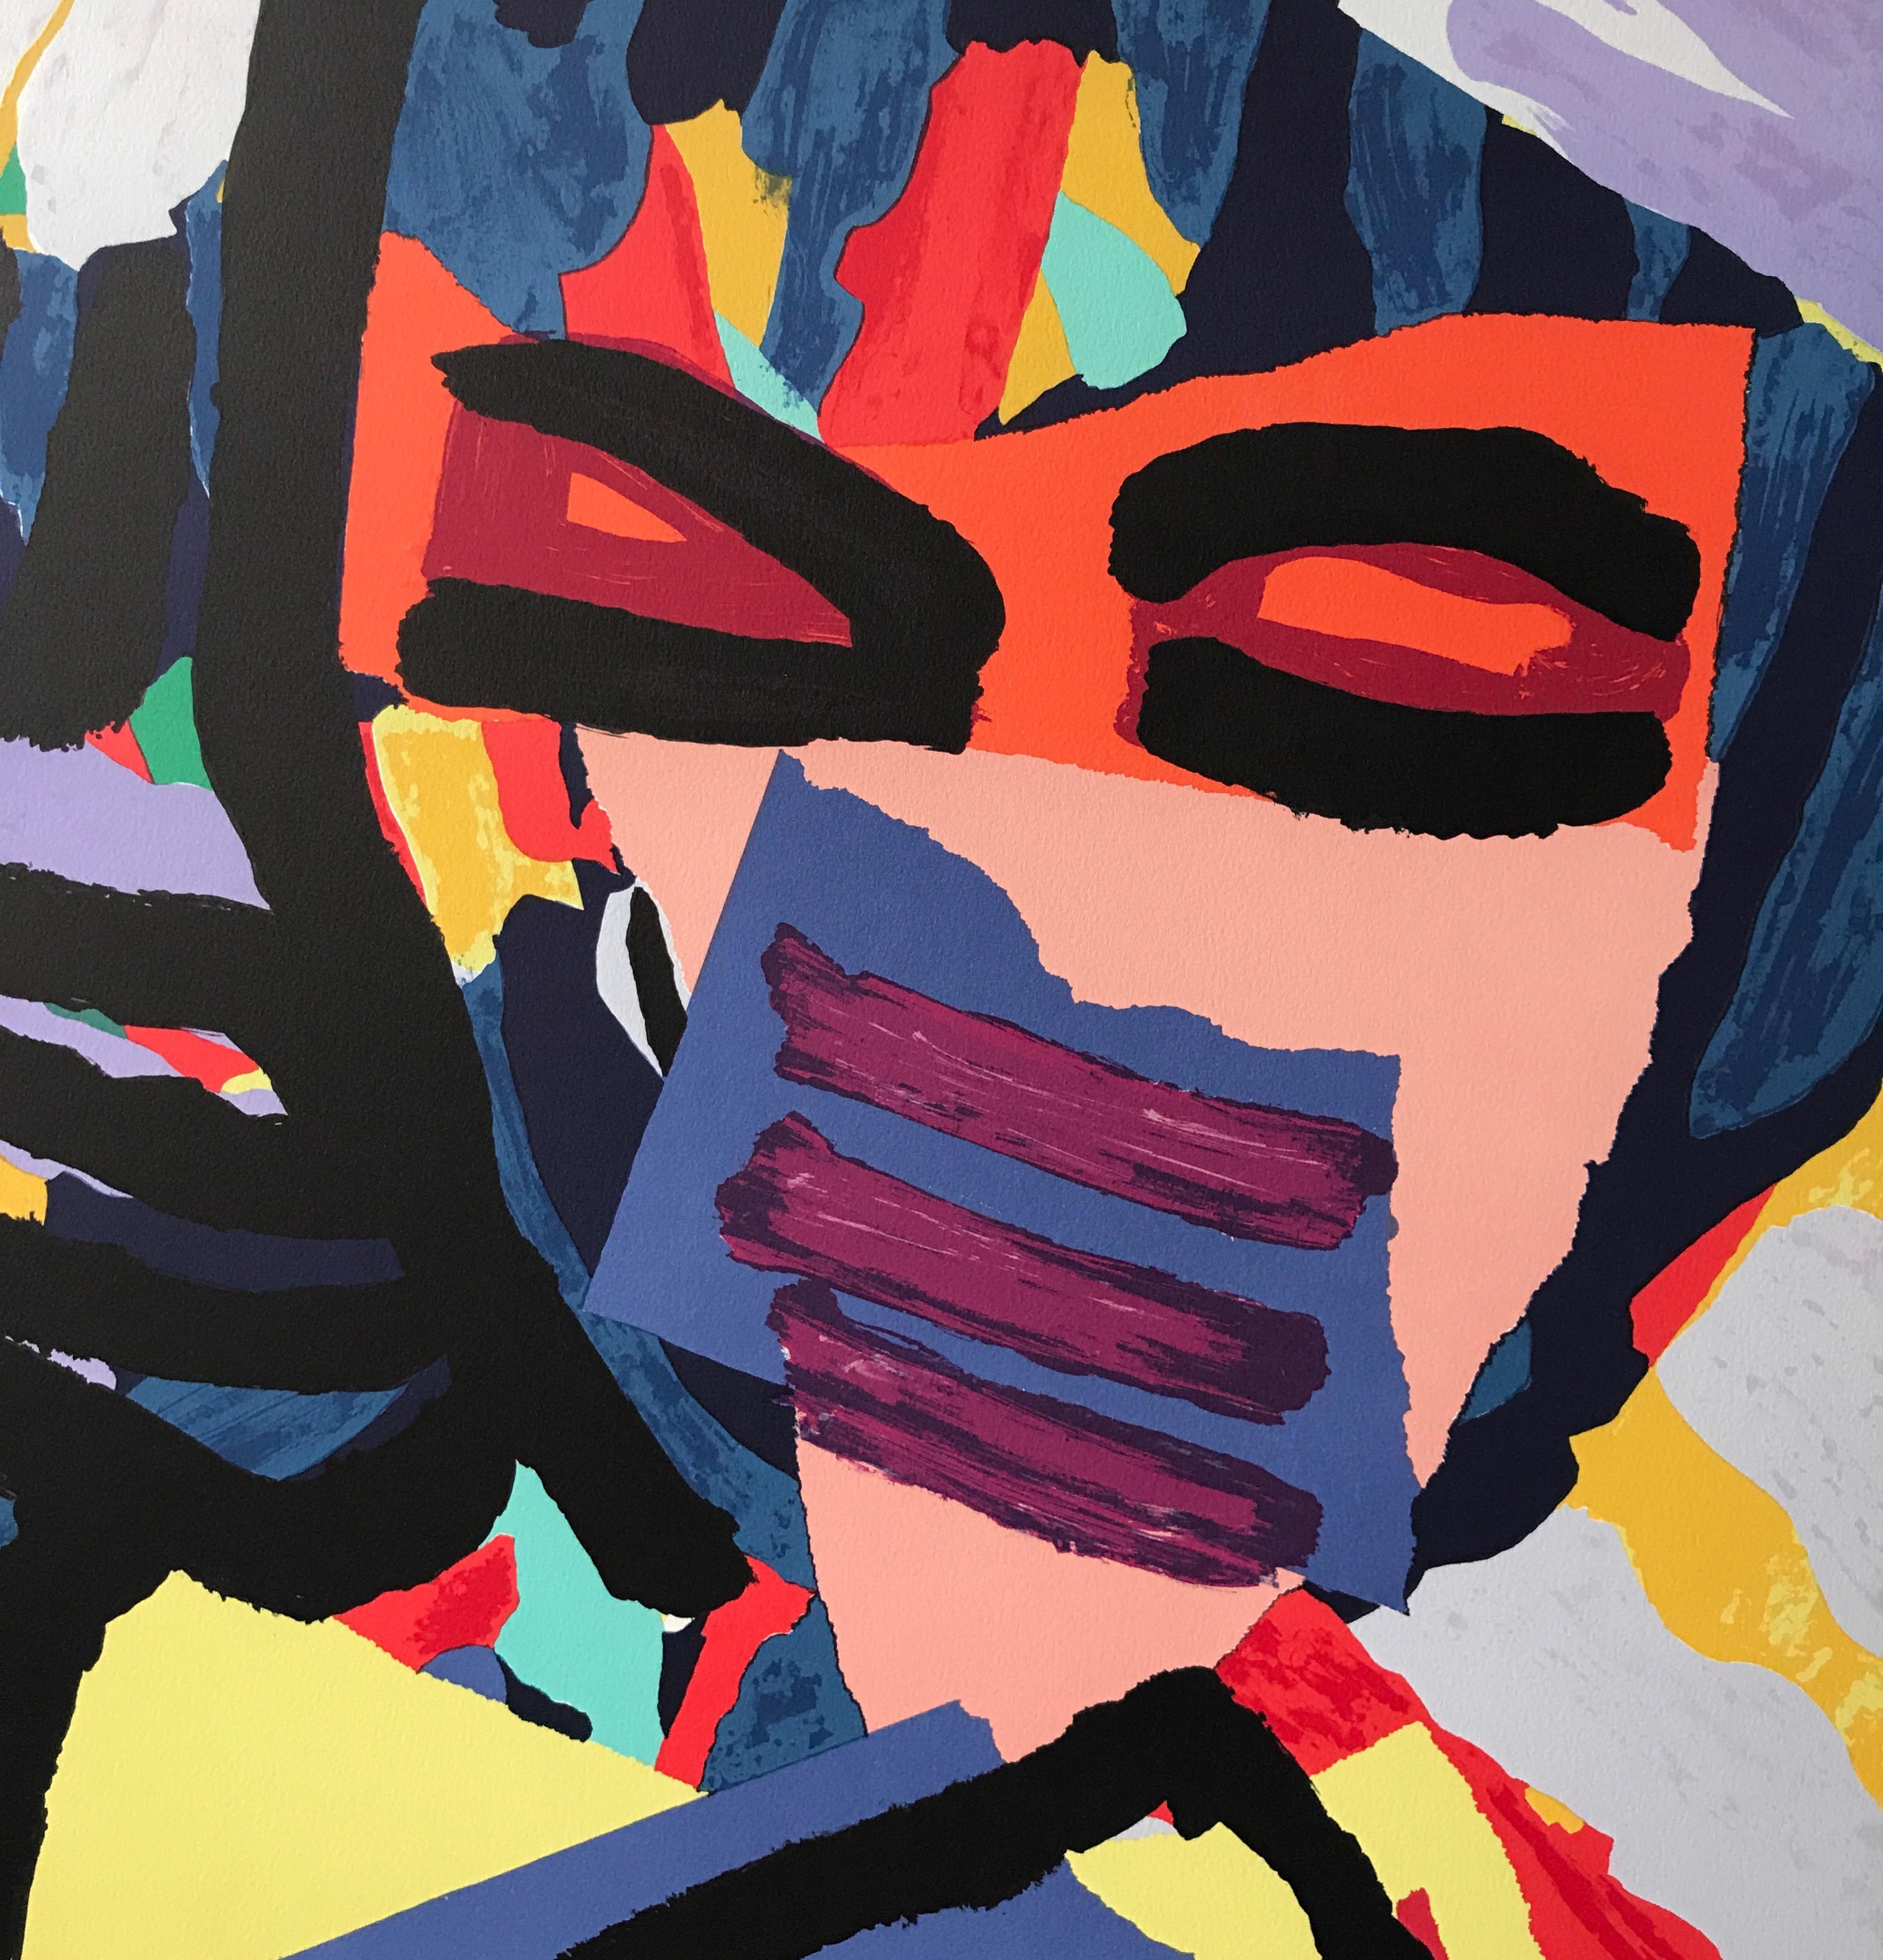 Mask Face Personage ist eine Original-Lithografie des niederländischen Künstlers Karel Appel in limitierter Auflage, gedruckt im Handlithografie-Verfahren auf archivfähigem Arches-Papier, 100% säurefrei. Mask Face Personage präsentiert ein